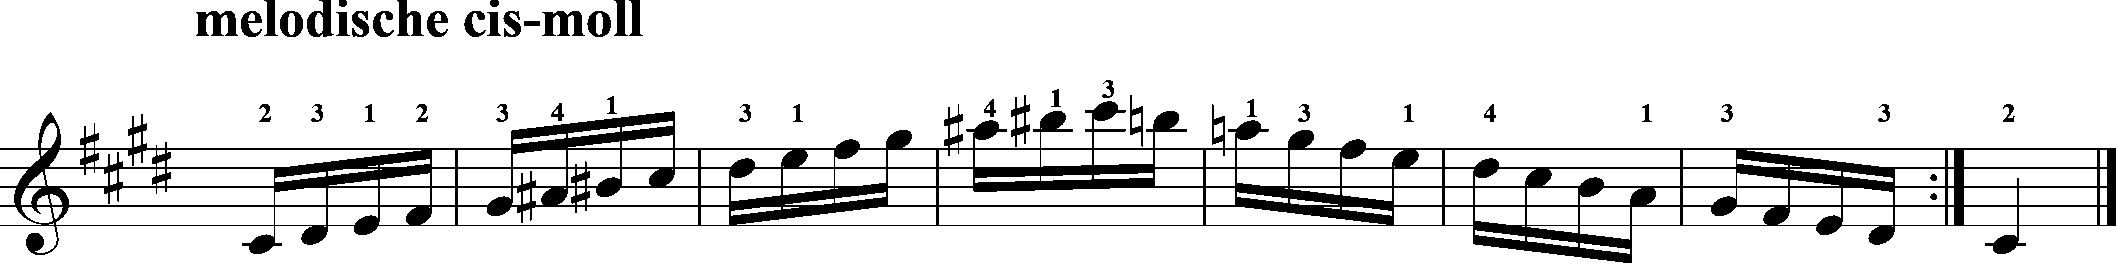 akkordeon, melodische cis-moll, skalen, hanon